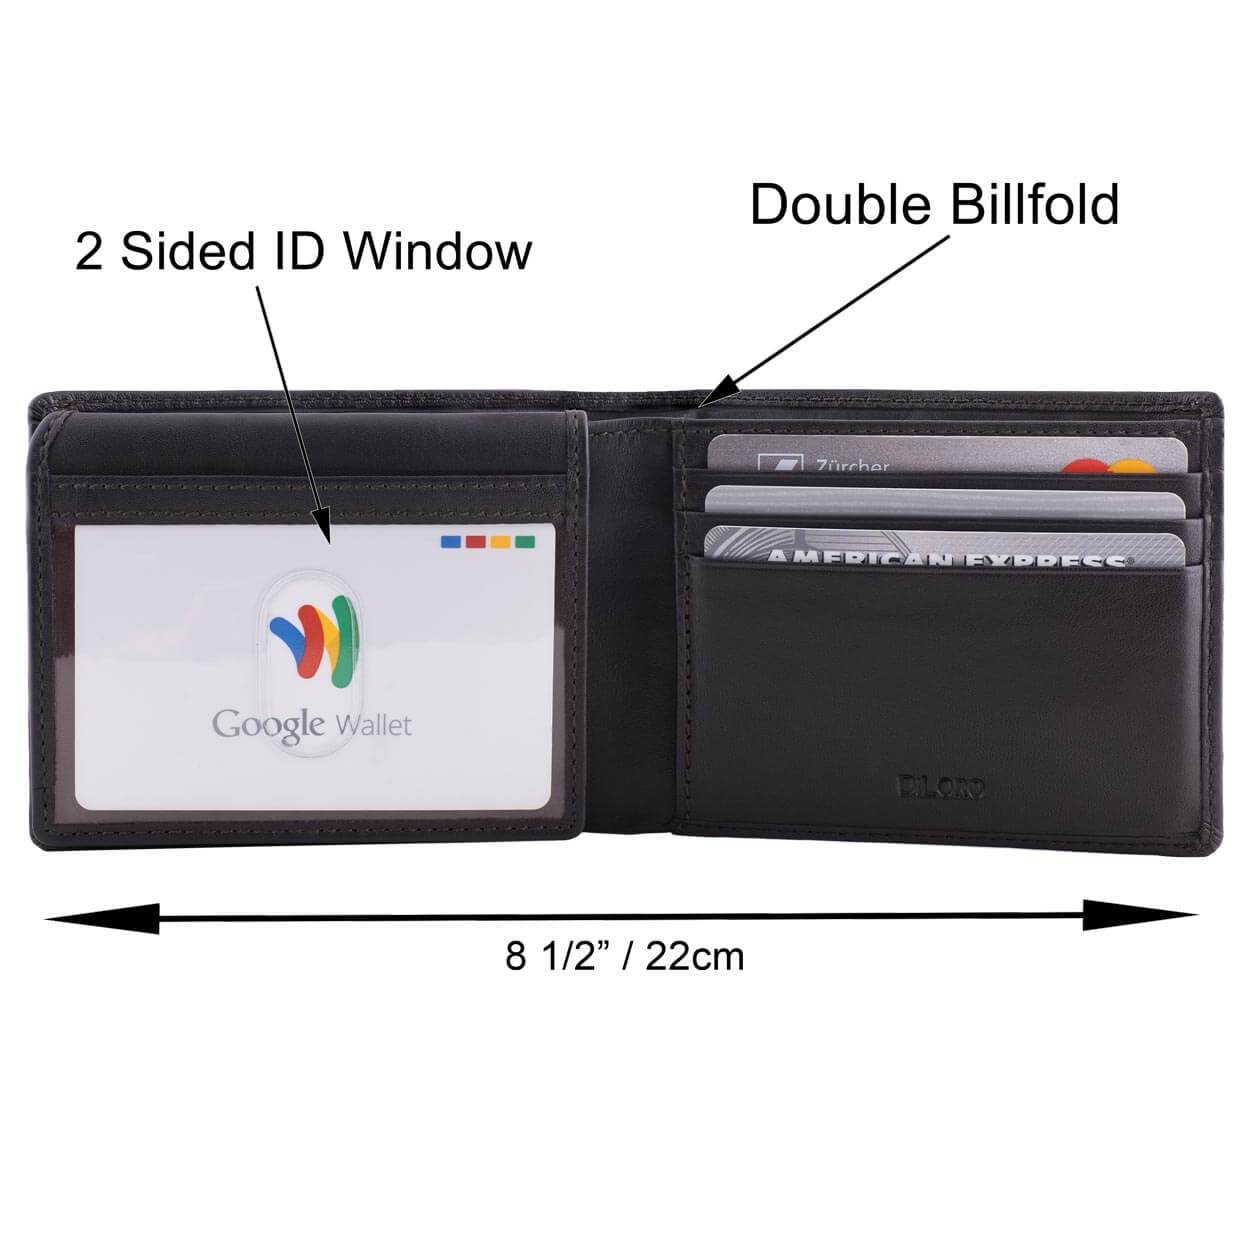 DiLoro Men's Large RFID Blocking Bifold Leather Wallet